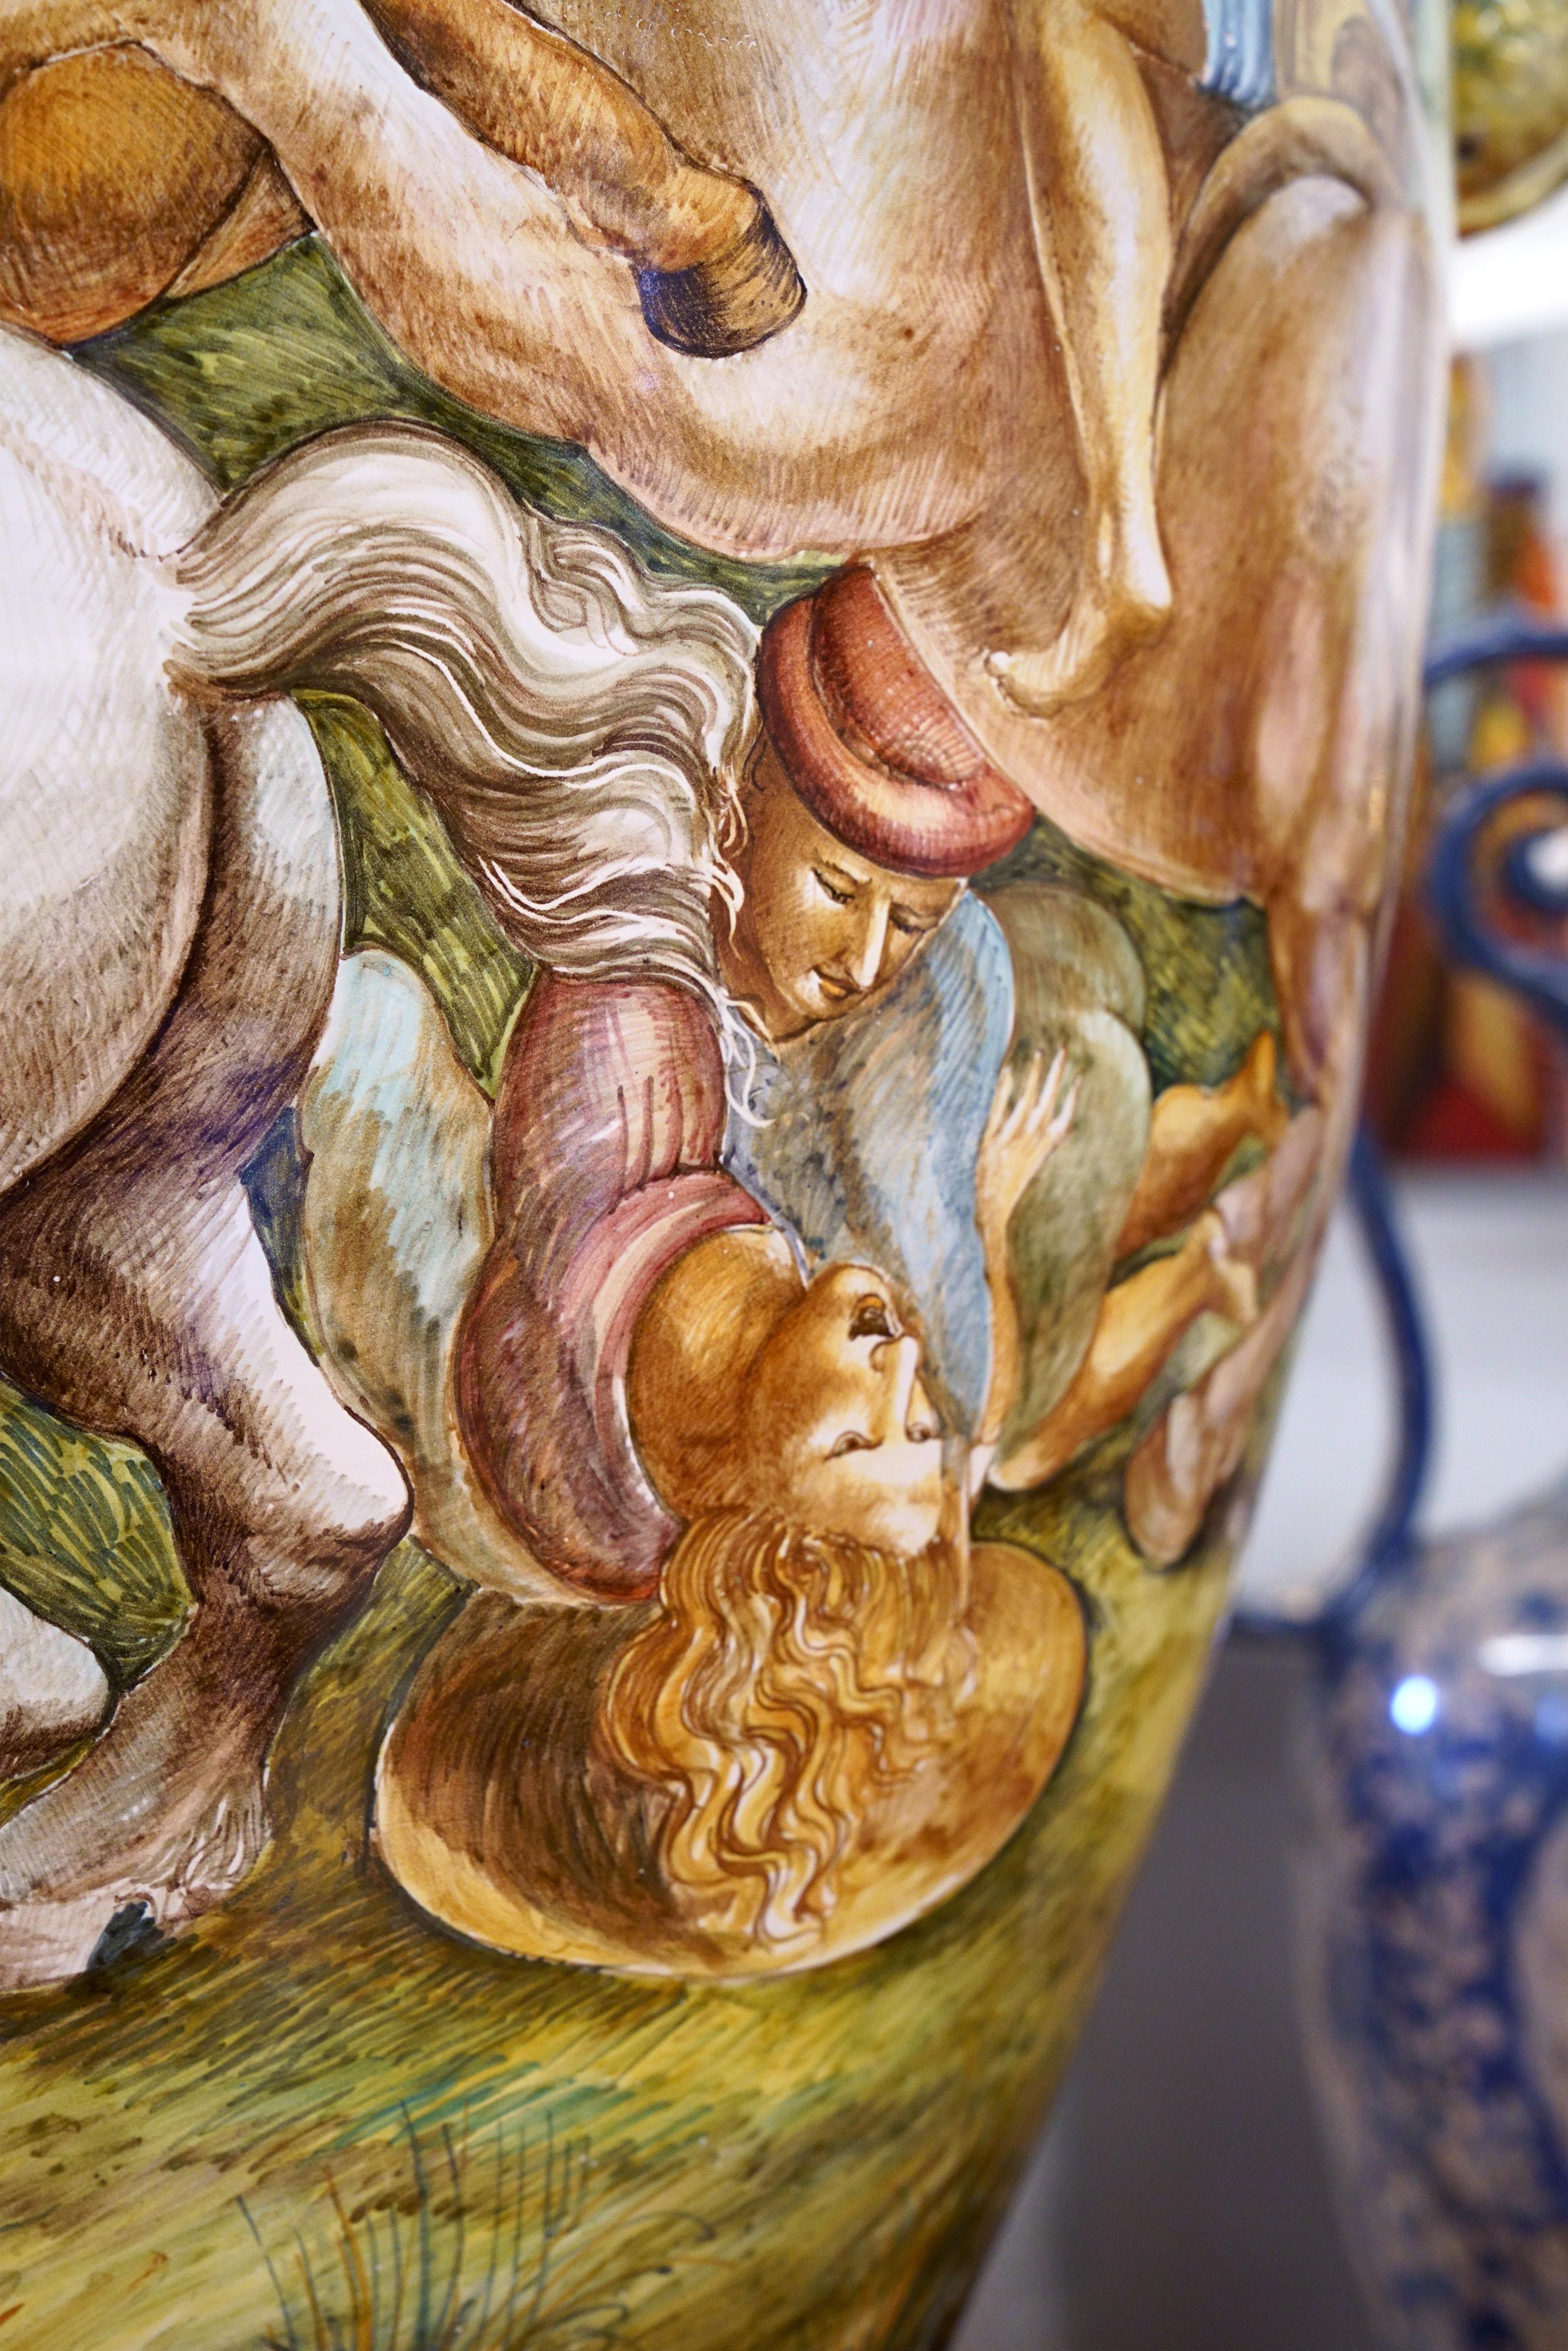 Ceramic Majestic Amphora Vase Majolica Painted Subject Inspired by Leonardo Da Vinci For Sale